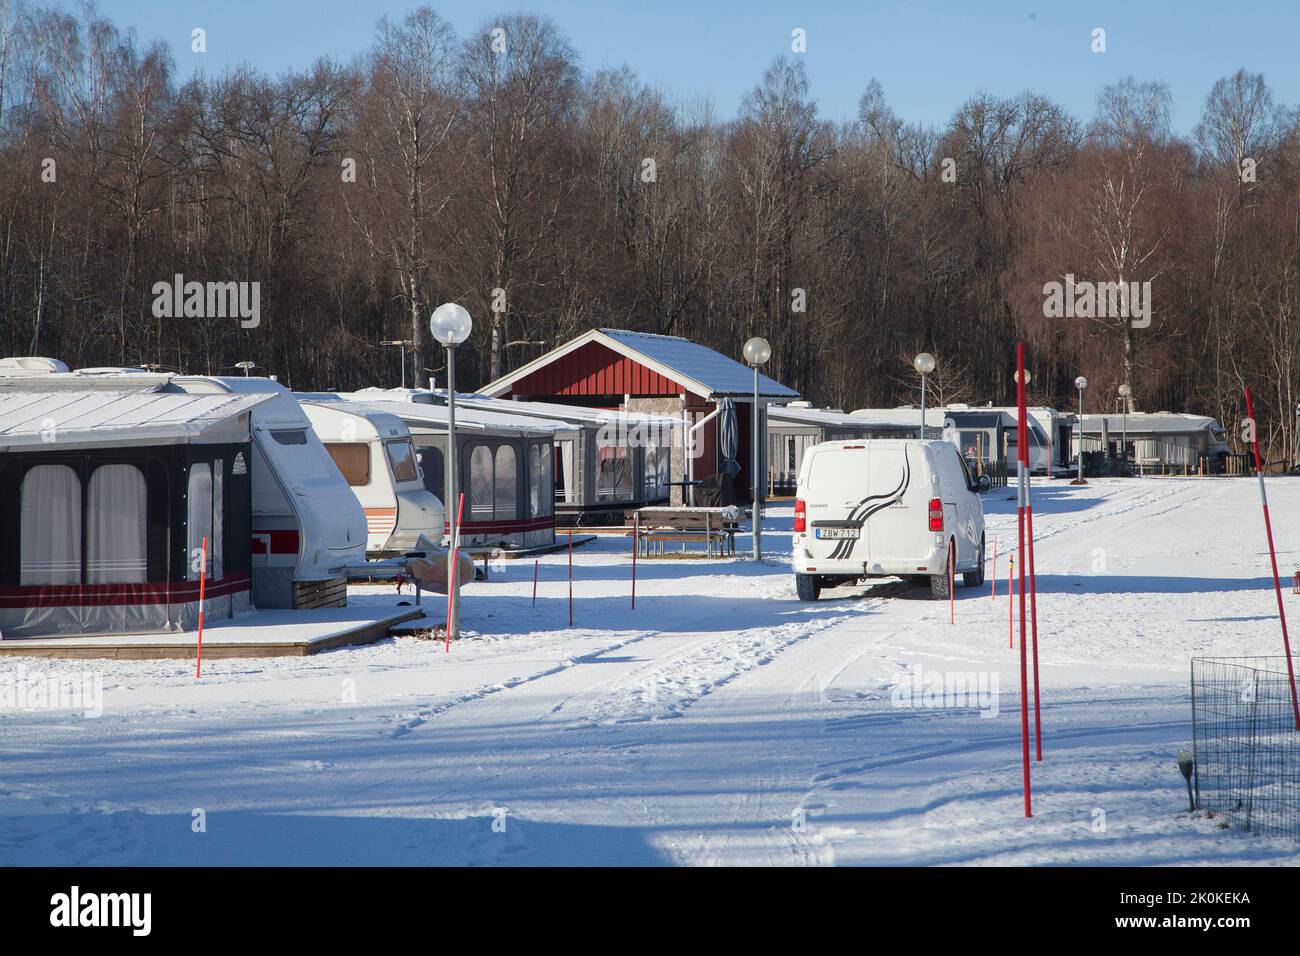 TUTTO L'ANNO CAMPING in caravan in una giornata invernale innevata Foto Stock